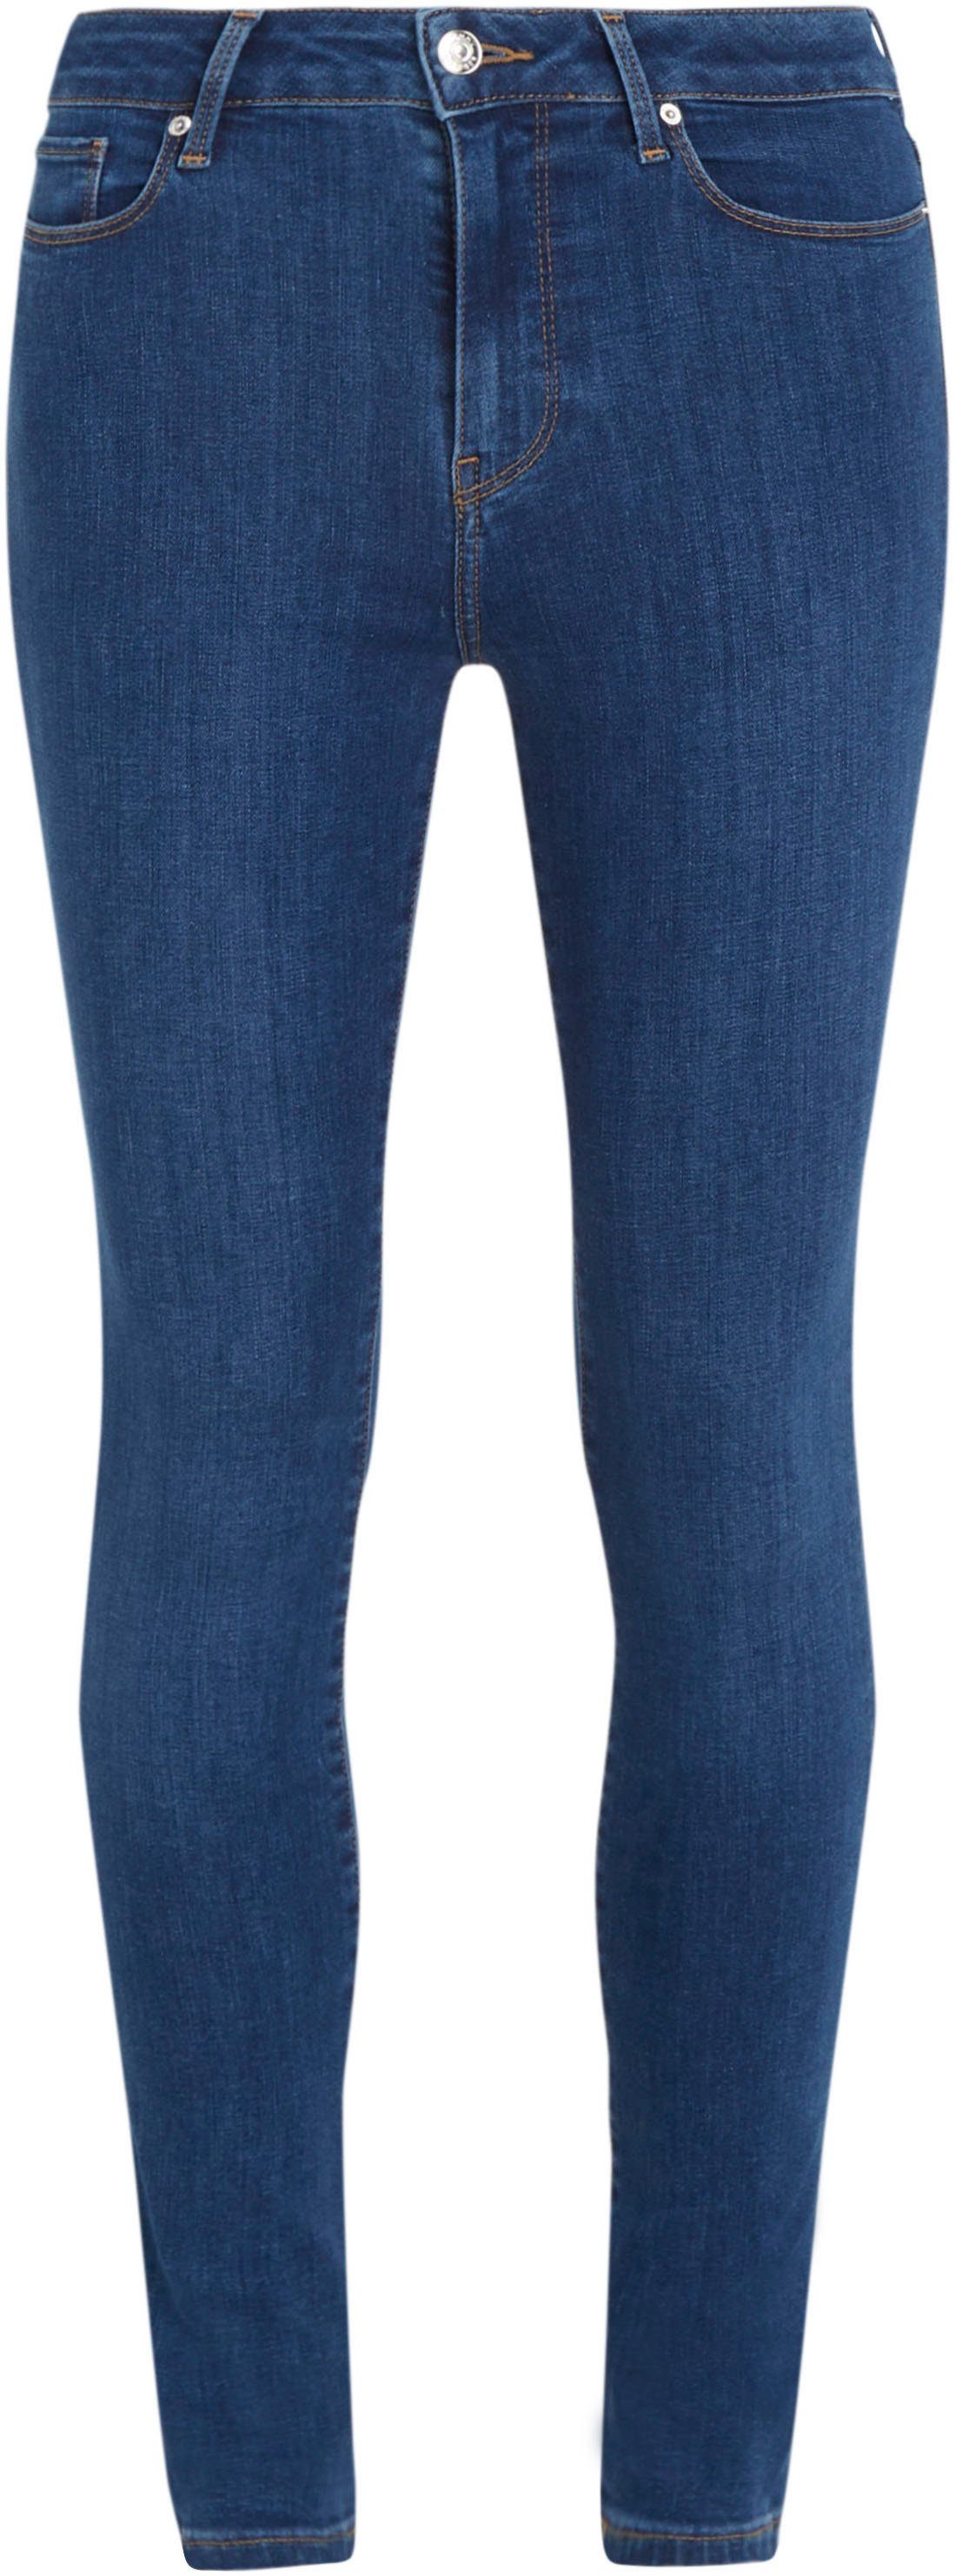 Skinny-fit-Jeans Tommy KAI in HW Waschung TH SKINNY HARLEM blauer FLEX U Hilfiger